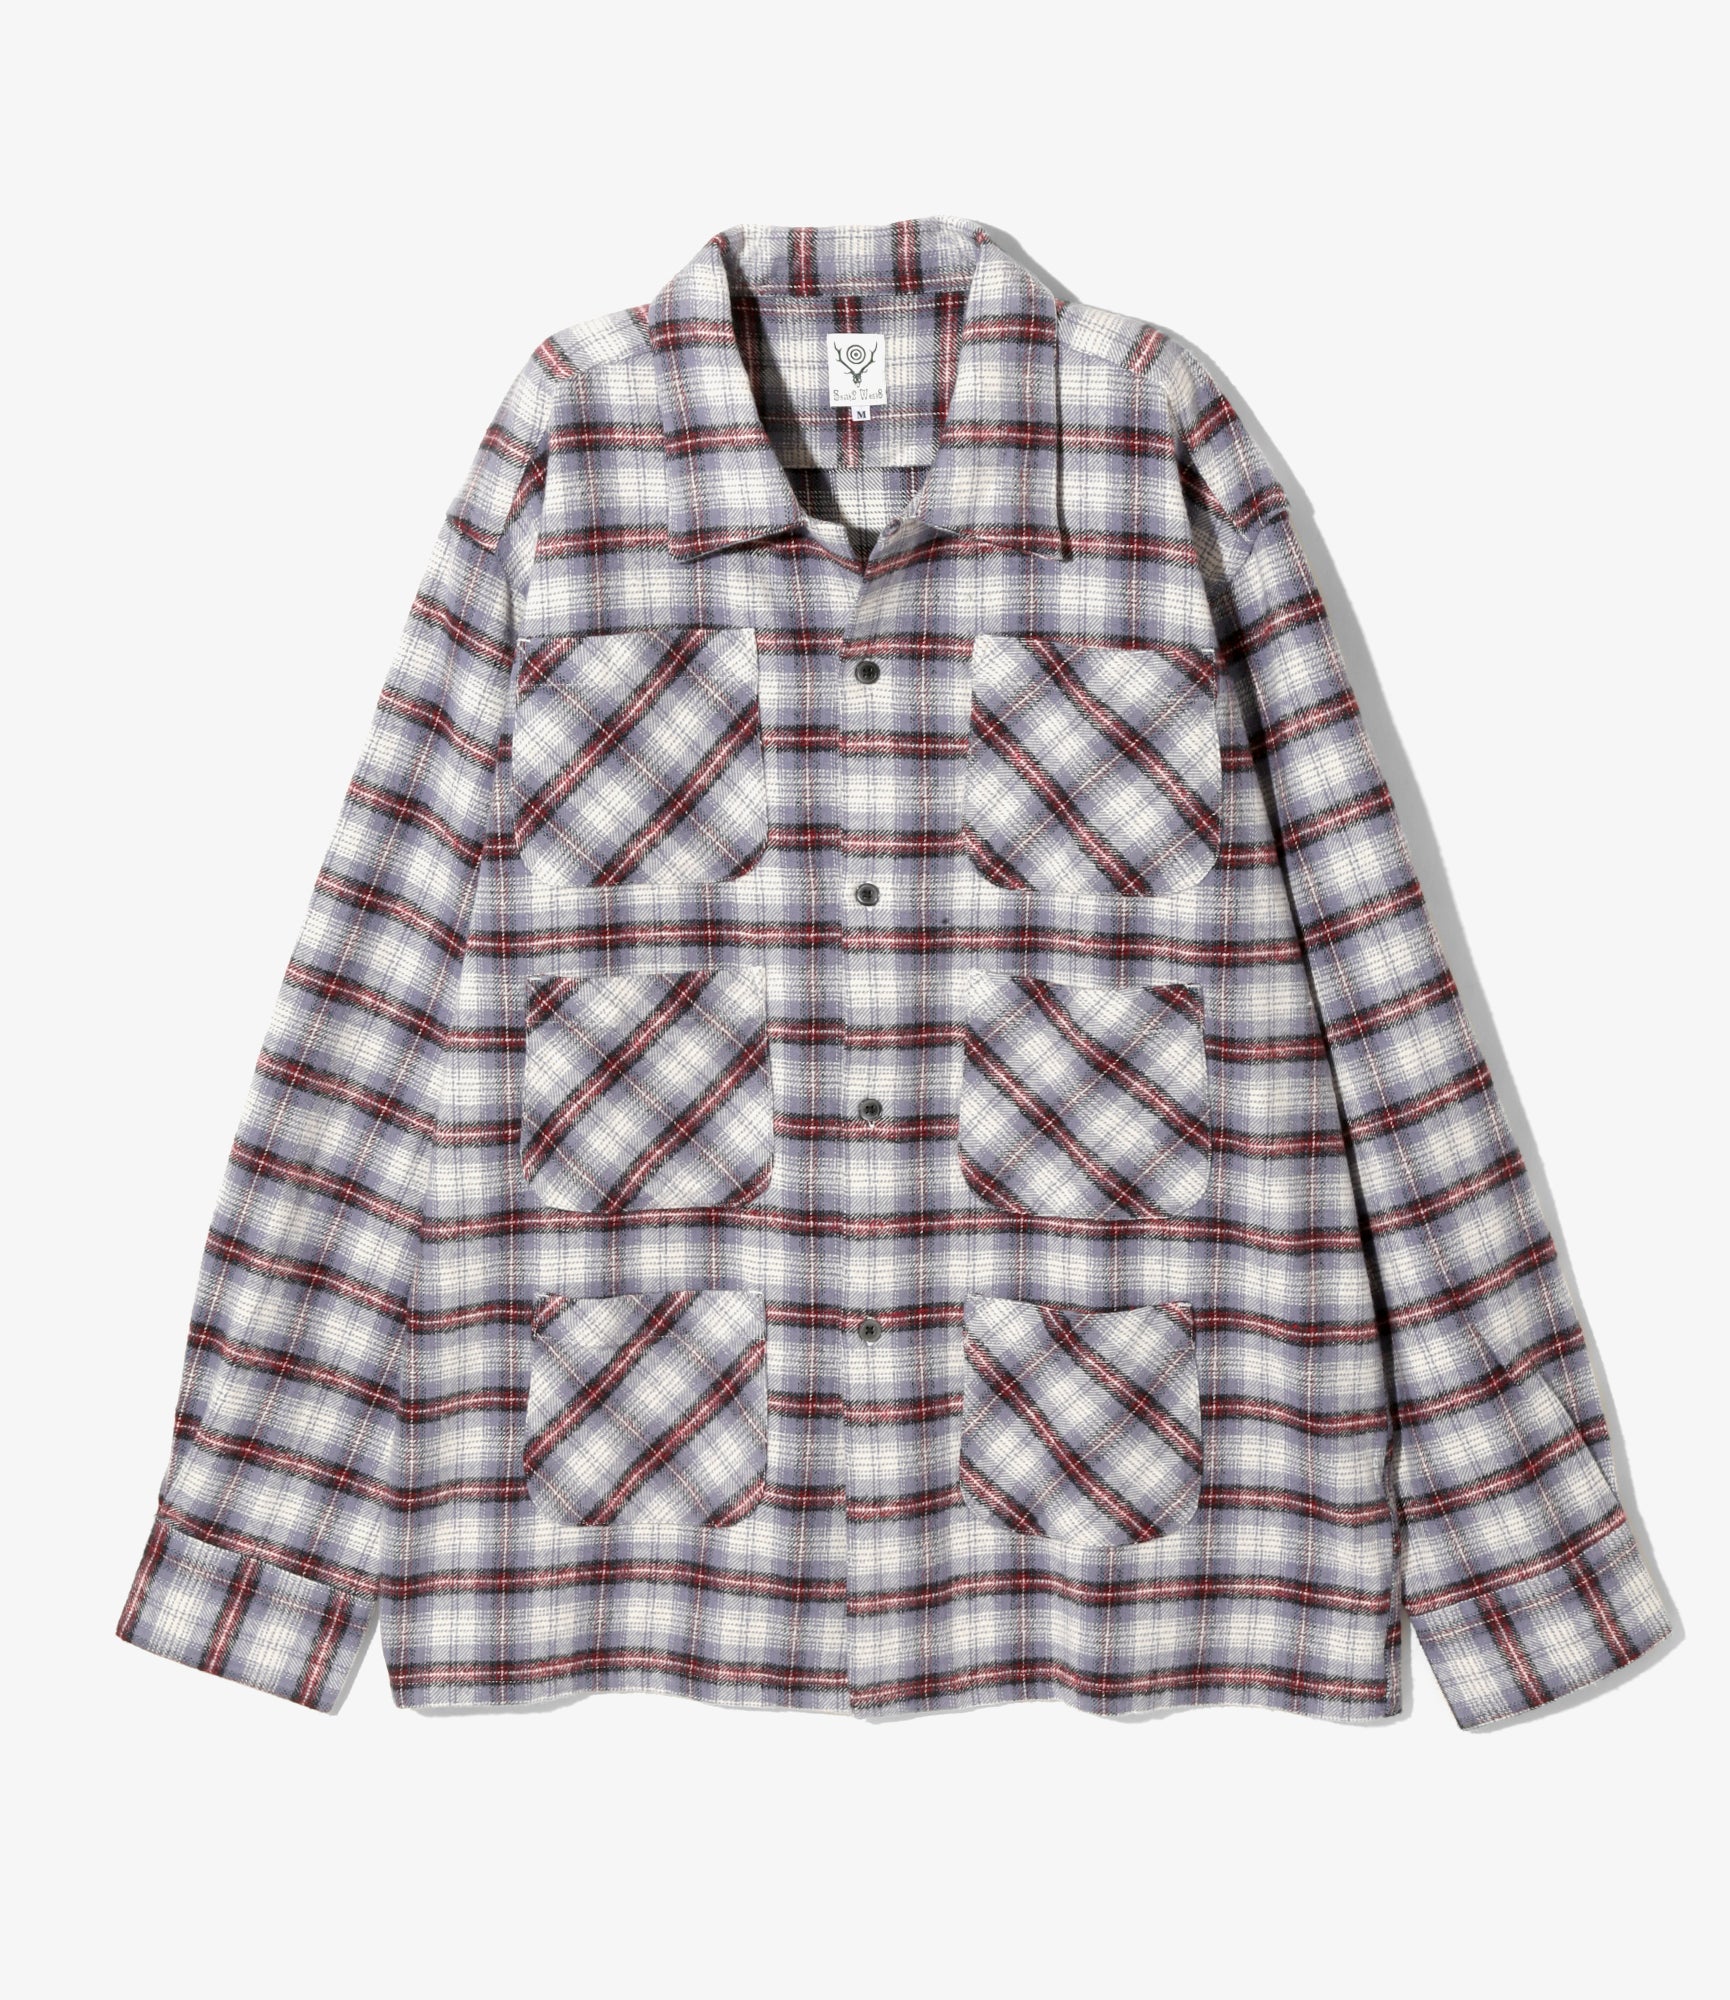 South2 West8 6 Pocket Shirt - Flannel Twill / Plaid - Lavender/Bordeaux